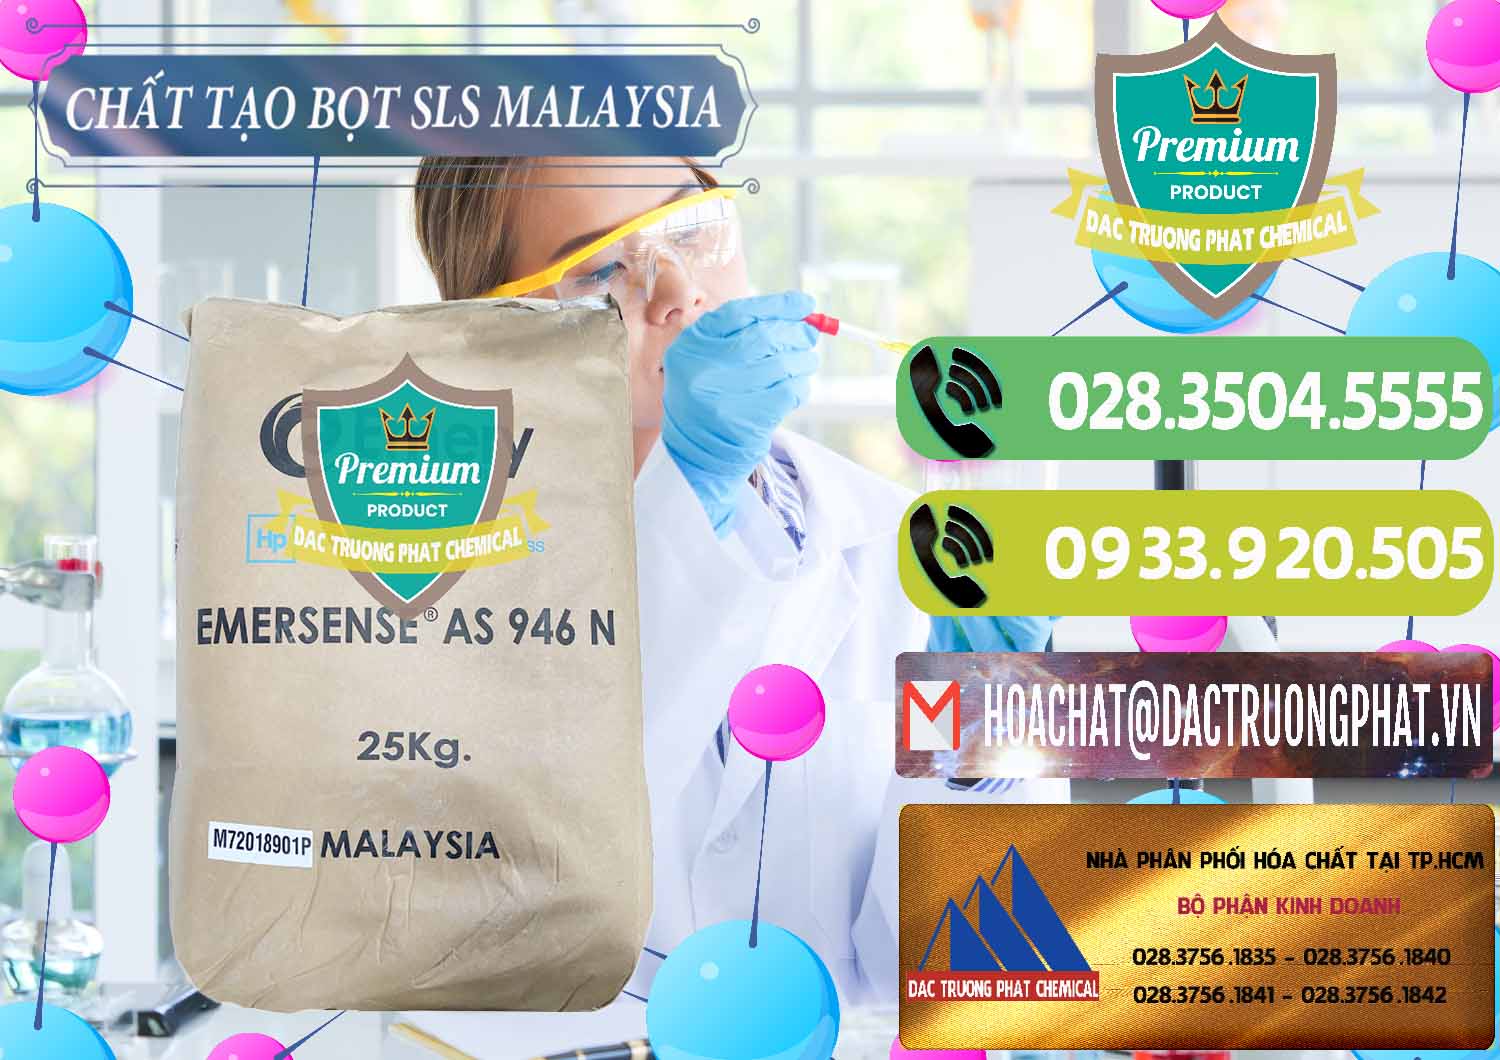 Công ty cung cấp & bán Chất Tạo Bọt SLS Emery - Emersense AS 946N Mã Lai Malaysia - 0423 - Công ty kinh doanh & cung cấp hóa chất tại TP.HCM - hoachatmientay.vn